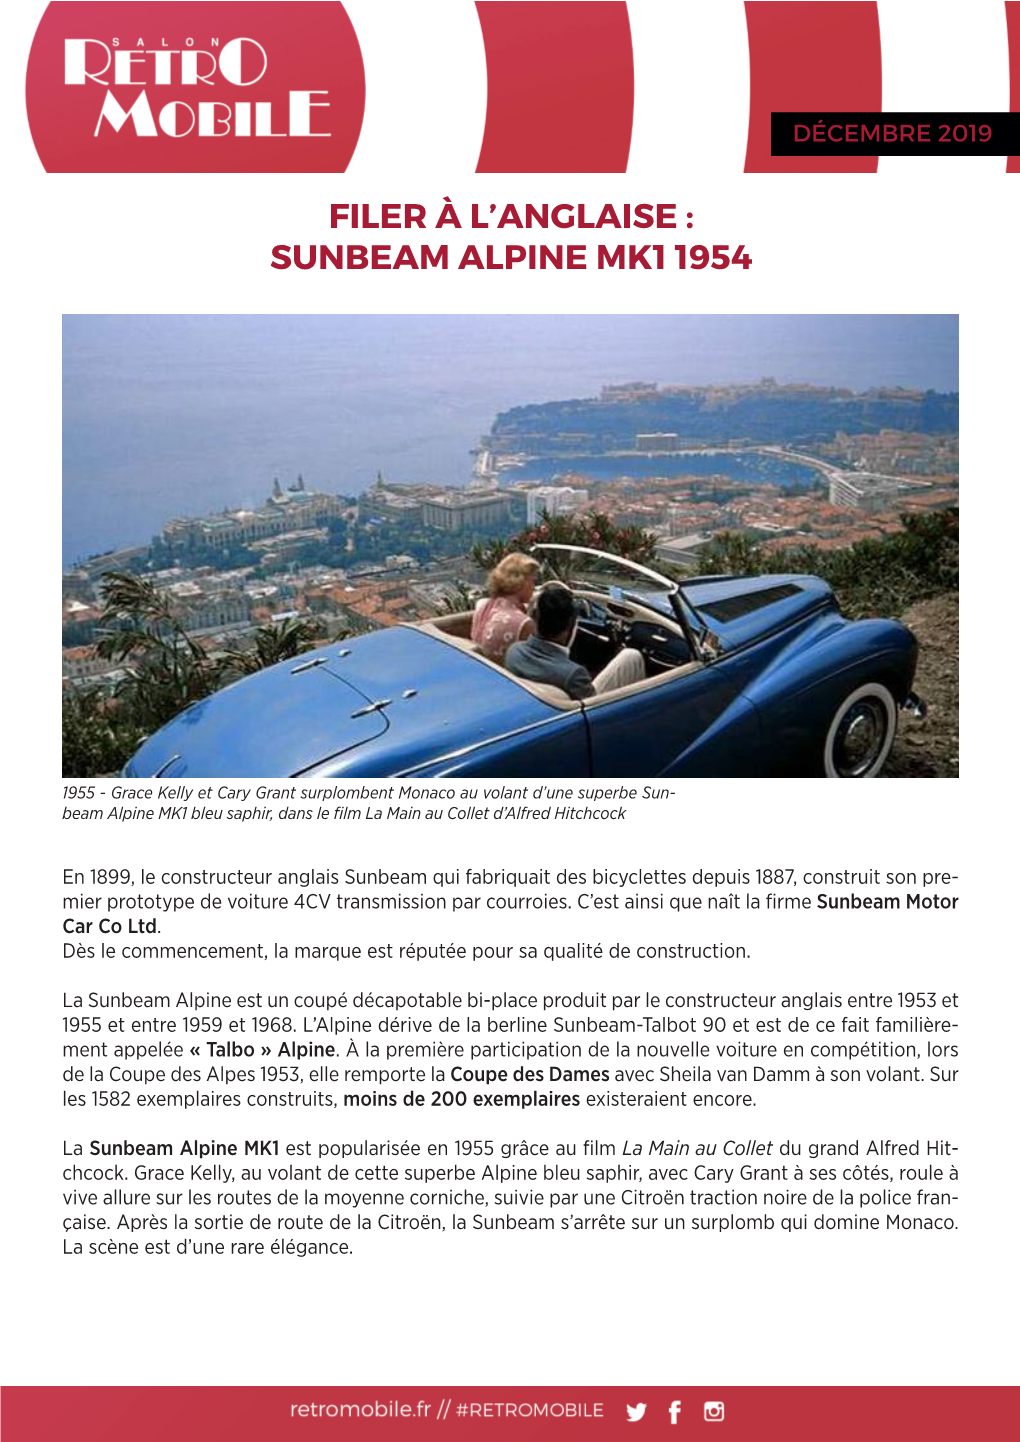 Sunbeam Alpine Mk1 1954